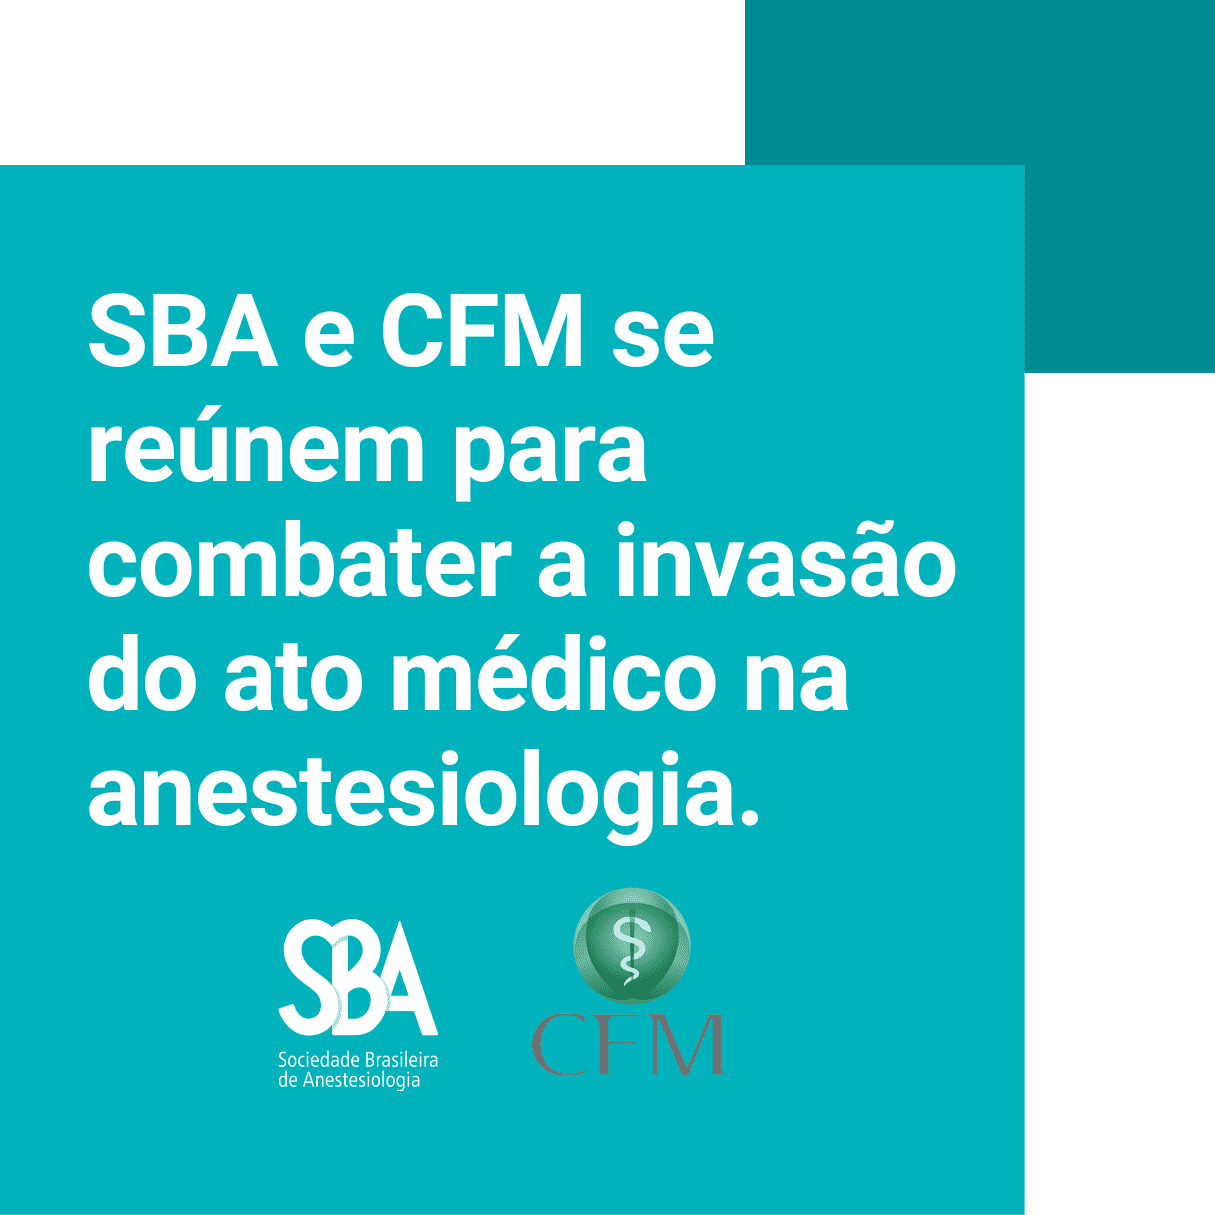 SBA e CFM se reúnem para combater a invasão do ato médico na anestesiologia